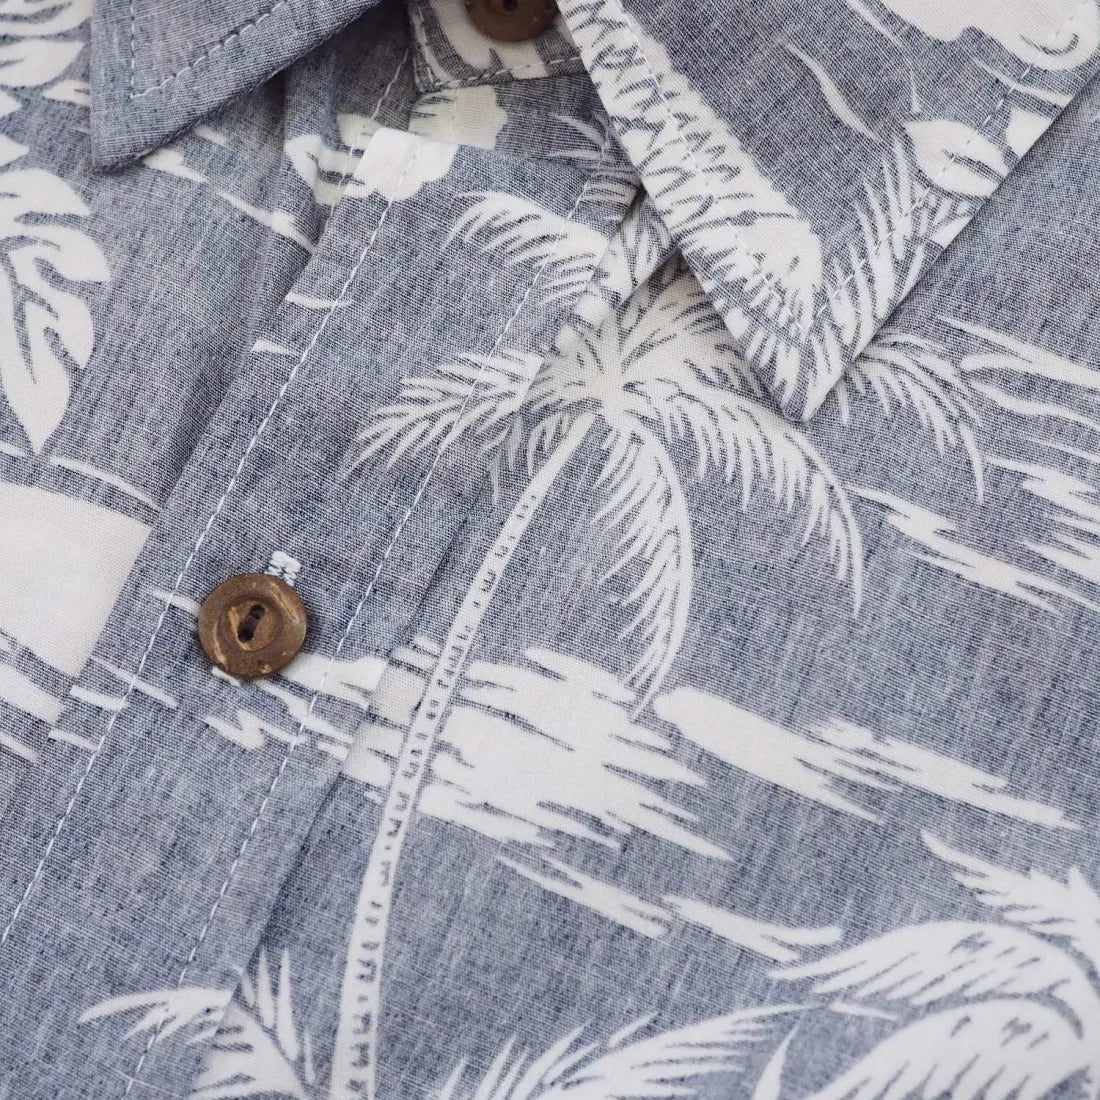 Blue Island Hawaiian Reverse Shirt - Made In Hawaii